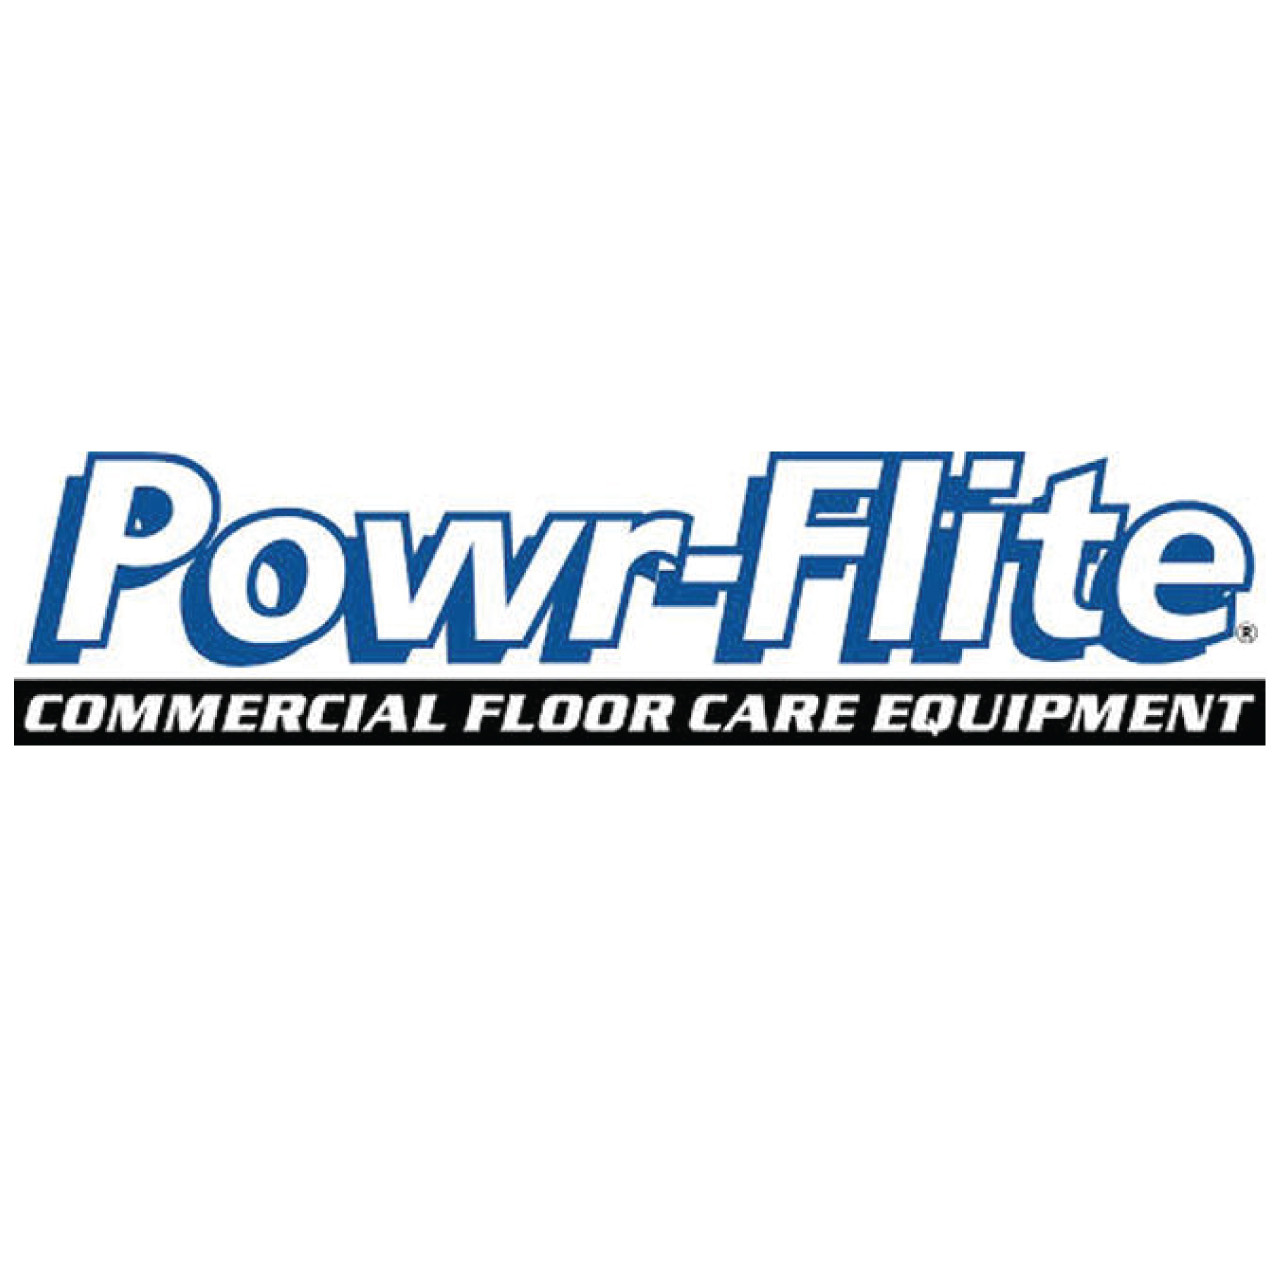 Powr-Flite X1278 - 1200PSI PUMP CONFIG UNLOADER, GAUGE, PLUMBED HOSES, #81426 pic